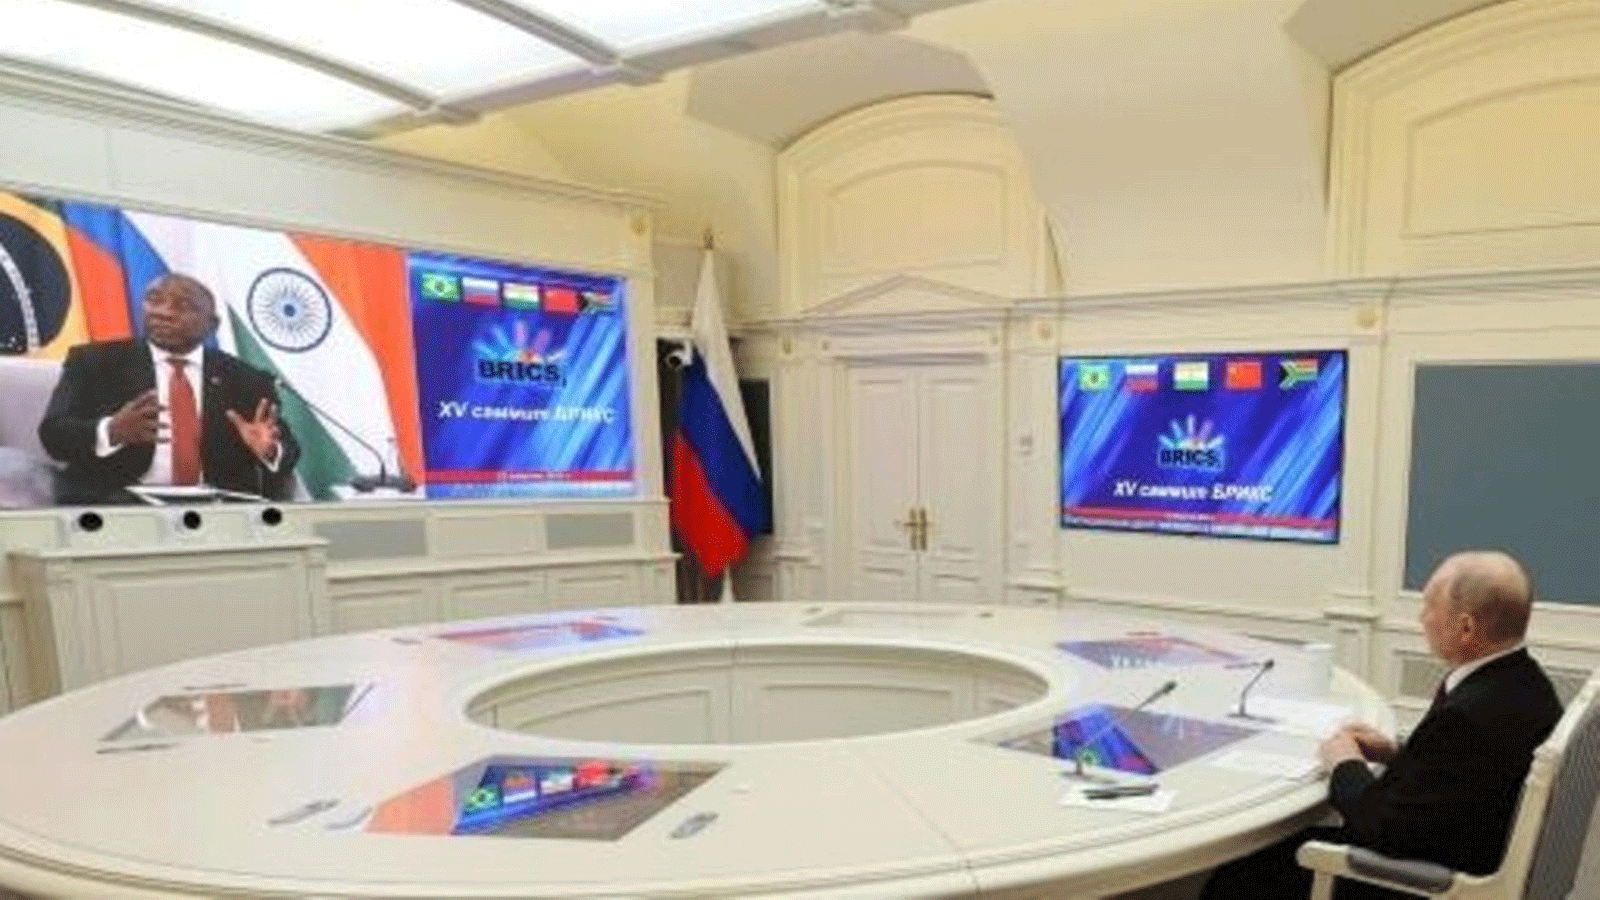 صورة وزعتها وكالة سبوتنيك للأنباء تُظهر الرئيس الروسي فلاديمير بوتين يشارك عبر الفيديو من موسكو في قمة لمجموعة البريكس عُقدت في جوهانسبرغ بجنوب أفريقيا في 24 آب/أغسطس 2023